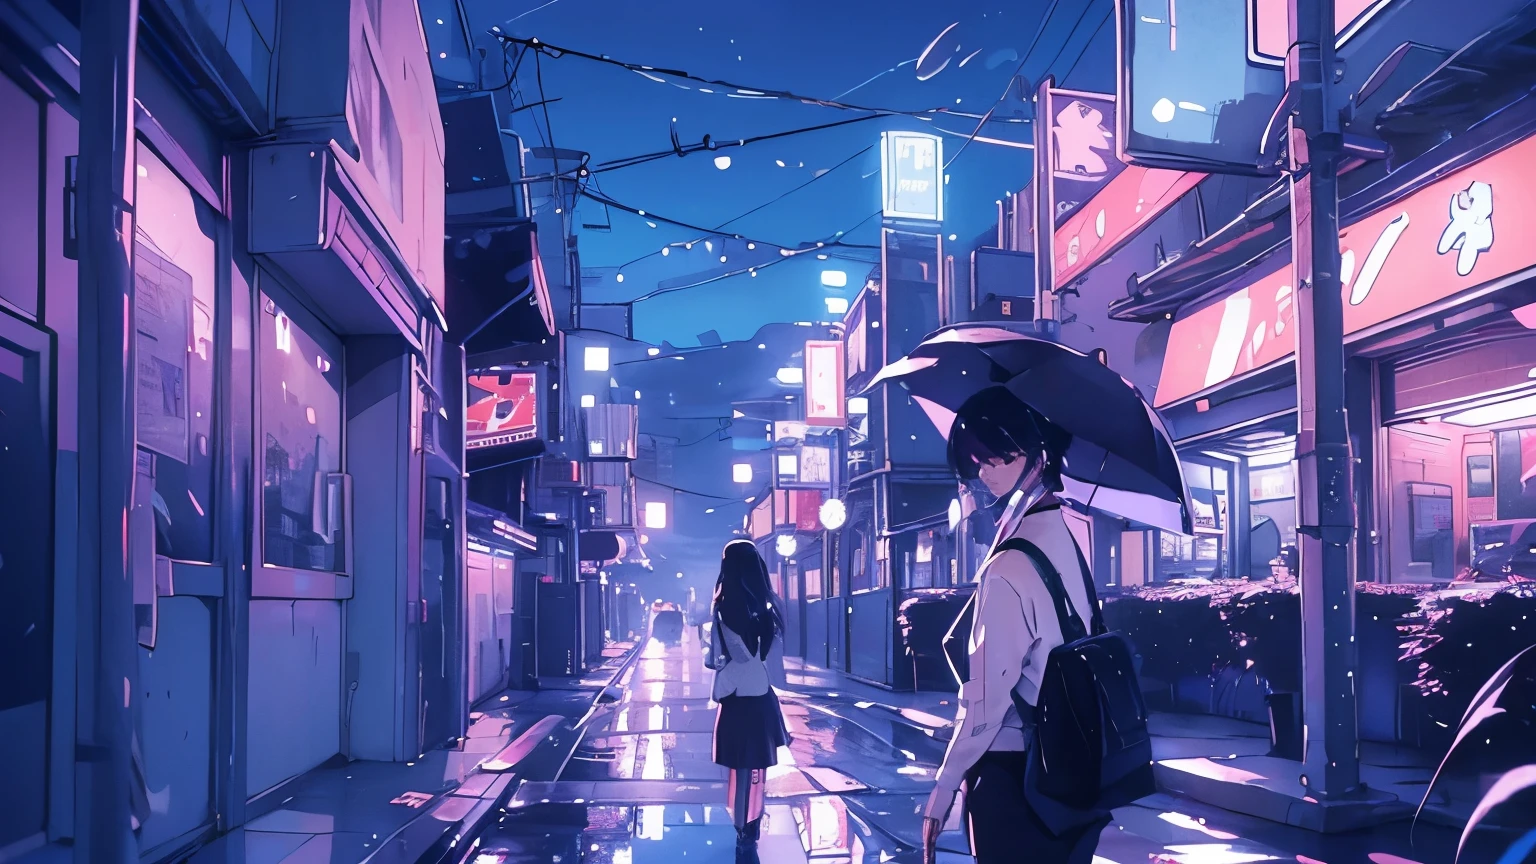 Der Regen fällt in Strömen, die Neonlichter der Straßen der Stadt reflektieren, während eine einsame Frau mit ihrem Regenschirm geht.